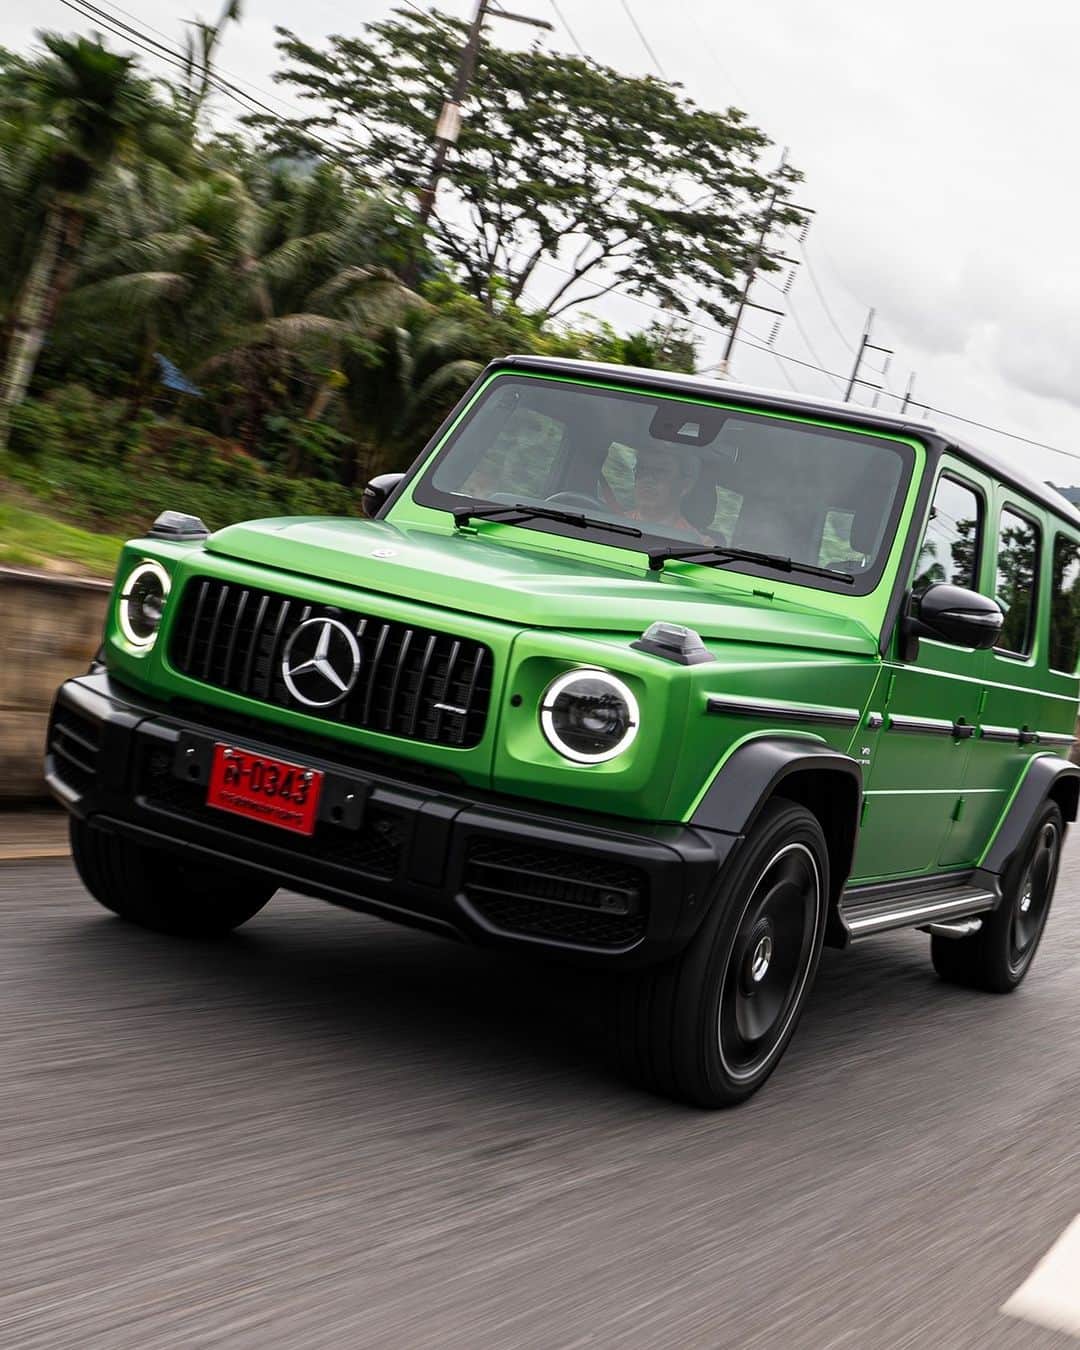 Mercedes-Benz Thailandのインスタグラム：「❤️‍🔥 ปลุกจิตวิญญาณแห่งความเร้าใจ และ พาคุณสปีดไปกับความเร็วแรง  ให้คุณได้สัมผัสประสบการณ์การขับขี่รูปแบบใหม่อย่างเต็มขั้น กับ ‘AMG Experience On Road’ ซึ่งในครั้งนี้เราได้ยกกองทัพ Mercedes-AMG ที่อัดแน่นไปด้วยขุมพลังแห่งความสปอร์ต และเทคโนโลยีล้ำสมัยหลากหลายรุ่นพร้อมมอบแรงบิดได้อย่างเต็มกำลังทั้ง Mercedes-AMG G 63 เจ้าแห่ง Off-Road, ตำนานไอคอน Roadster อย่าง Mercedes-AMG SL 43, Mercedes-Maybach S 580 e Premium ยนตรกรรมแห่งความหรูหรา สง่างาม และยังมอบความสะดวกสบายให้คุณทุกขณะขับเคลื่อน และยังมี Mercedes-Benz อีกหลายรุ่นที่พร้อมมุ่งสู่เส้นทางริมทะเลอันดามัน  จะสนุกและประทับใจมากแค่ไหน มาชมไปพร้อมกันได้เลย…   จะสนุกและประทับใจมากแค่ไหน มาชมไปพร้อมกันได้เลย…   #AMG #MercedesAMG #Maybach #MercedesBenzThailand」